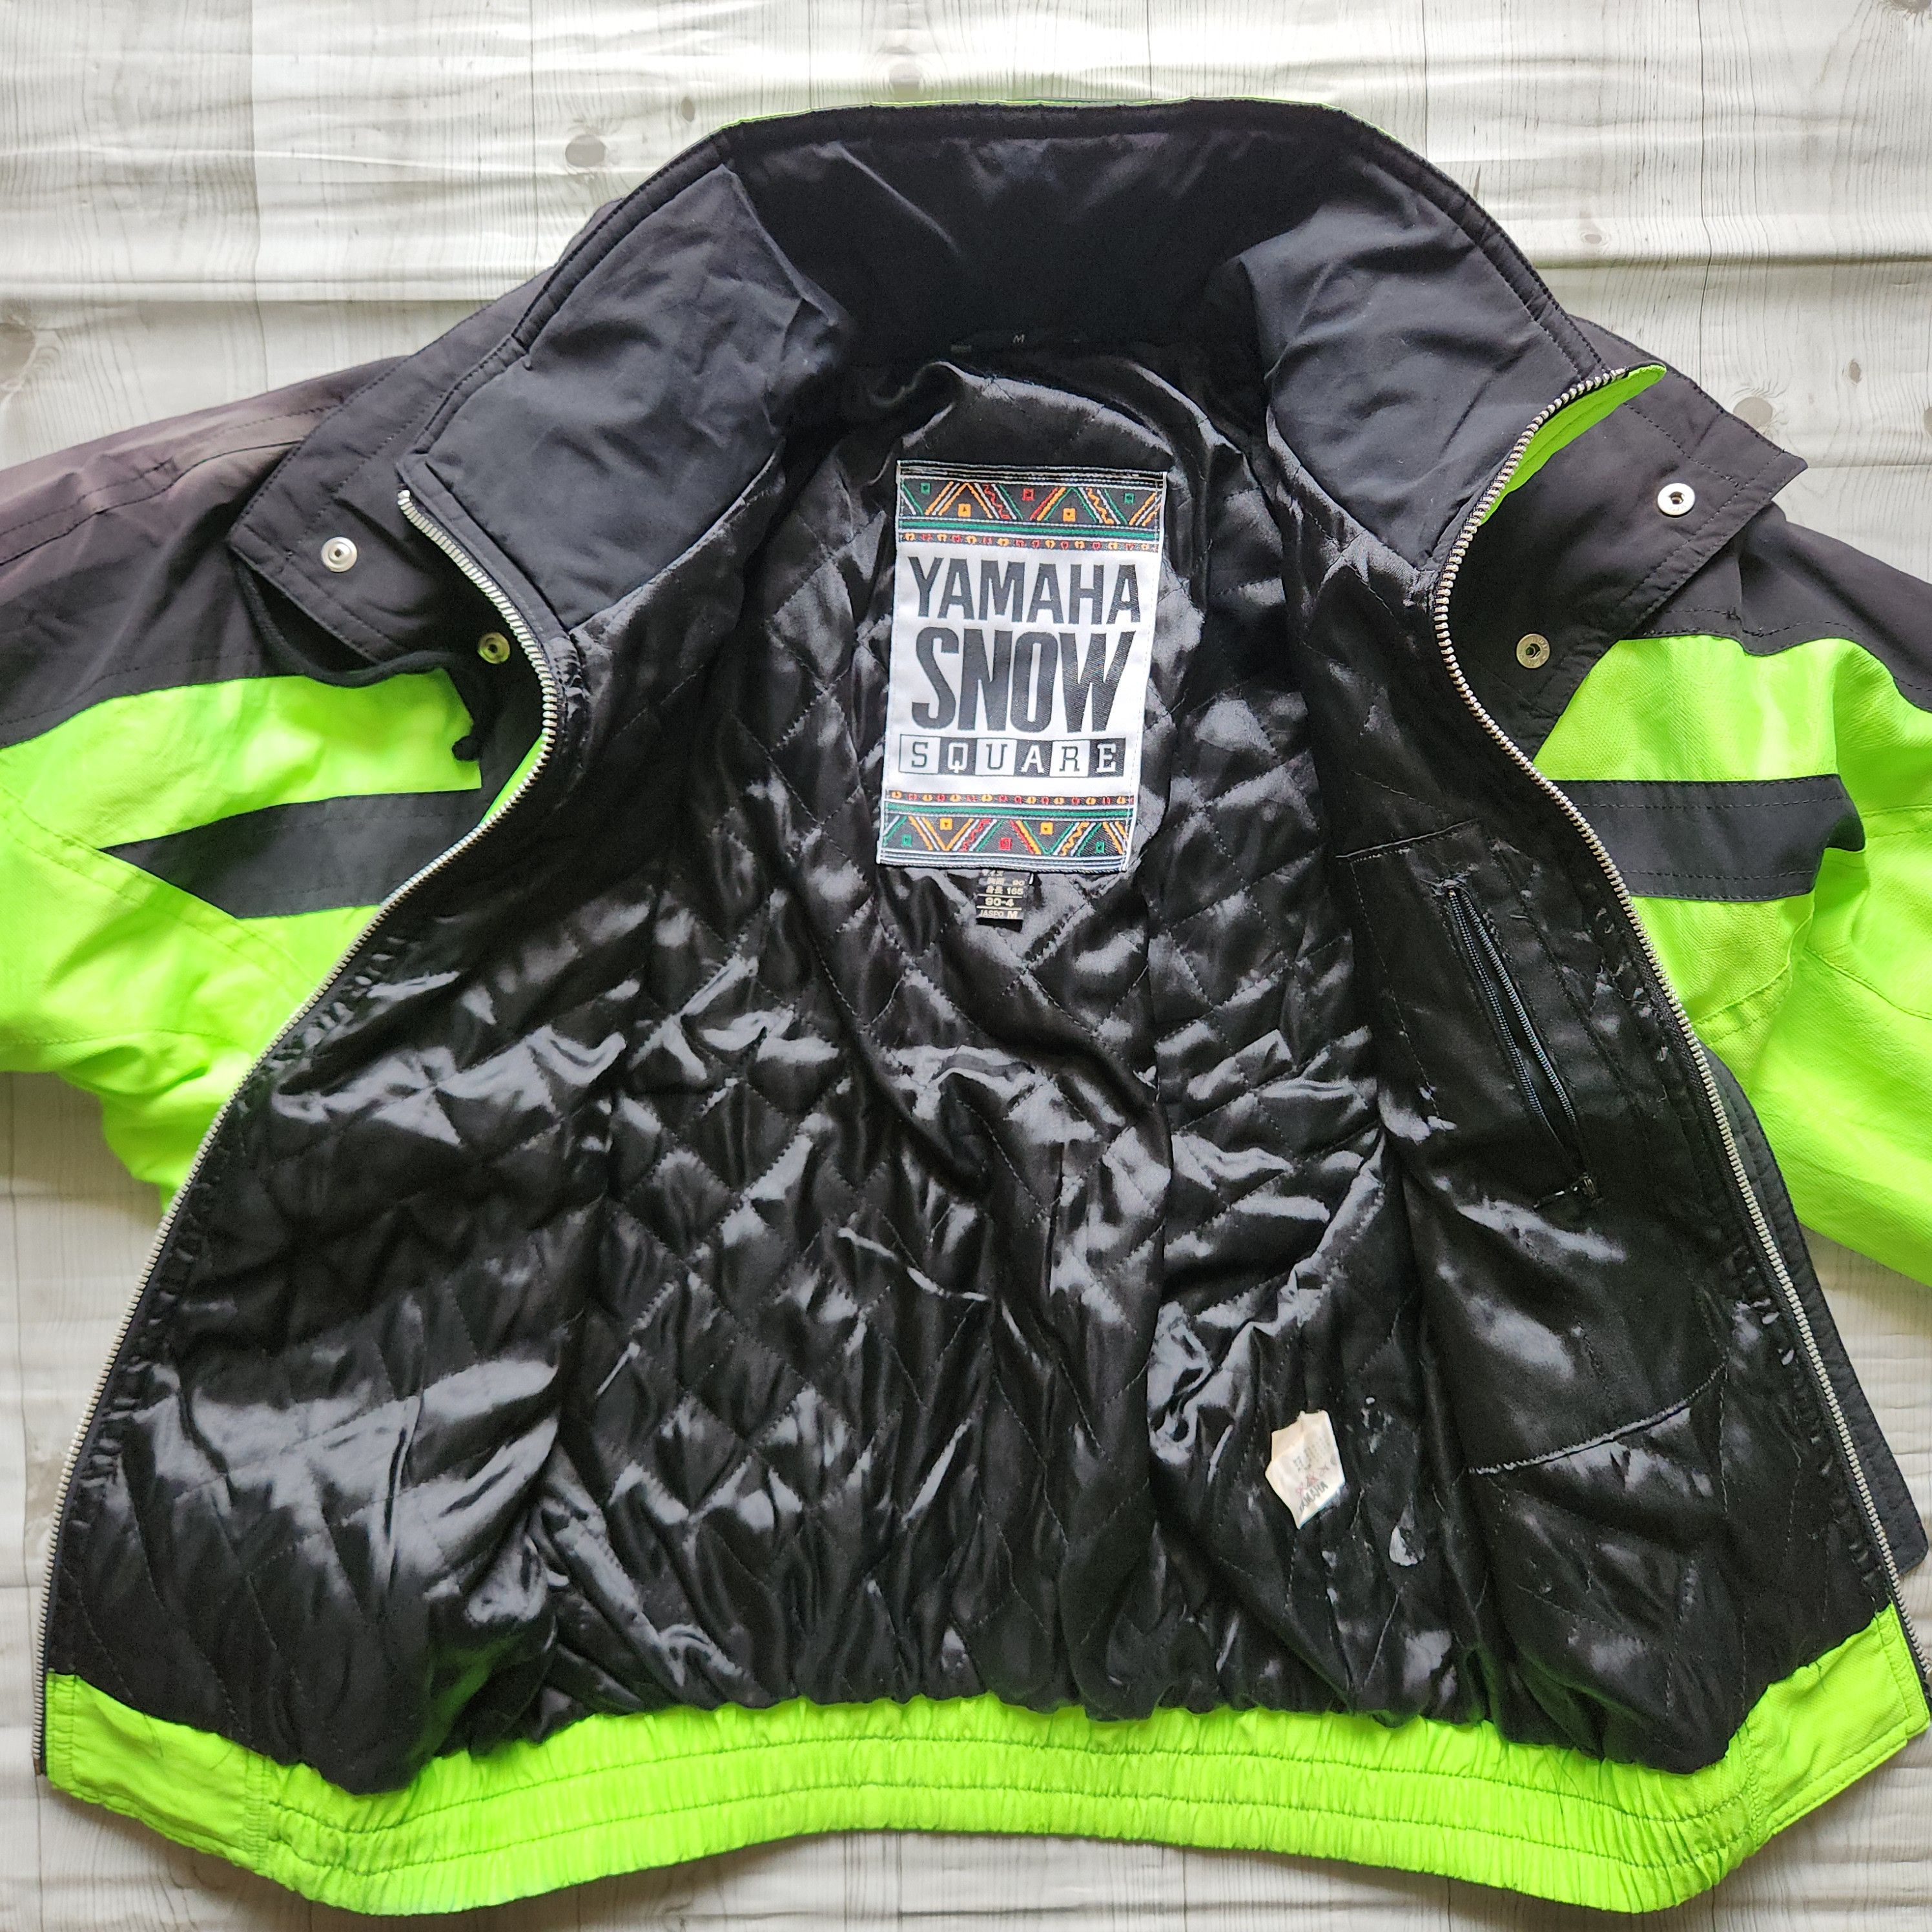 Yamaha - Yahama Snow Square Ski Jacket - 13